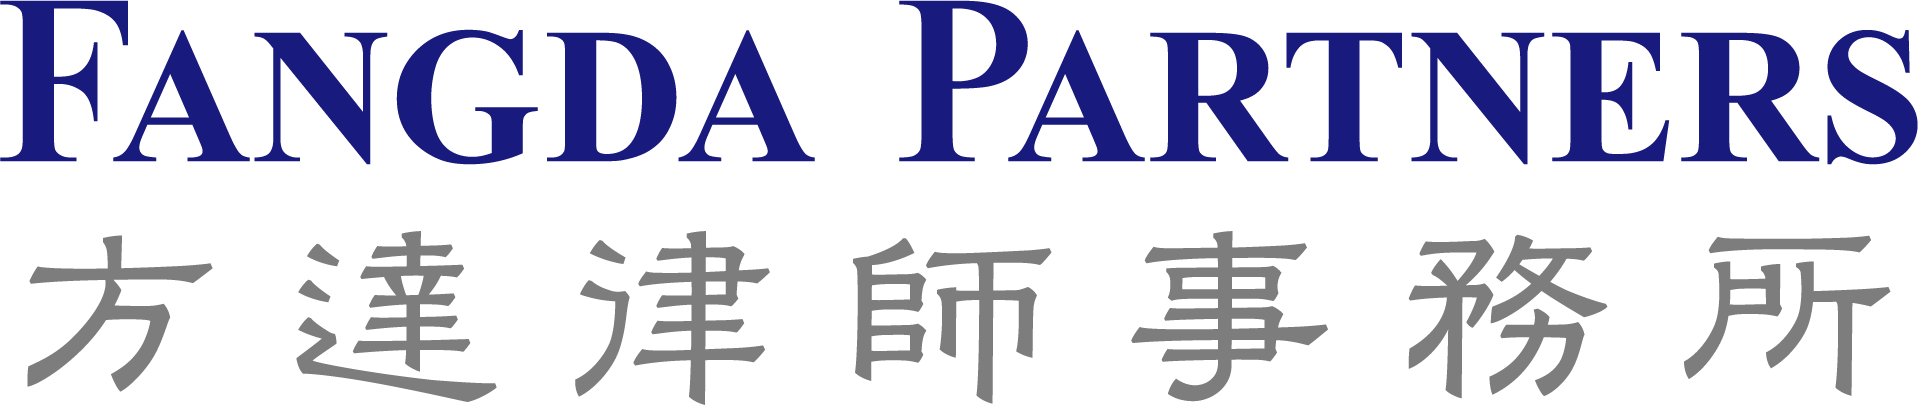 Fangda Partners